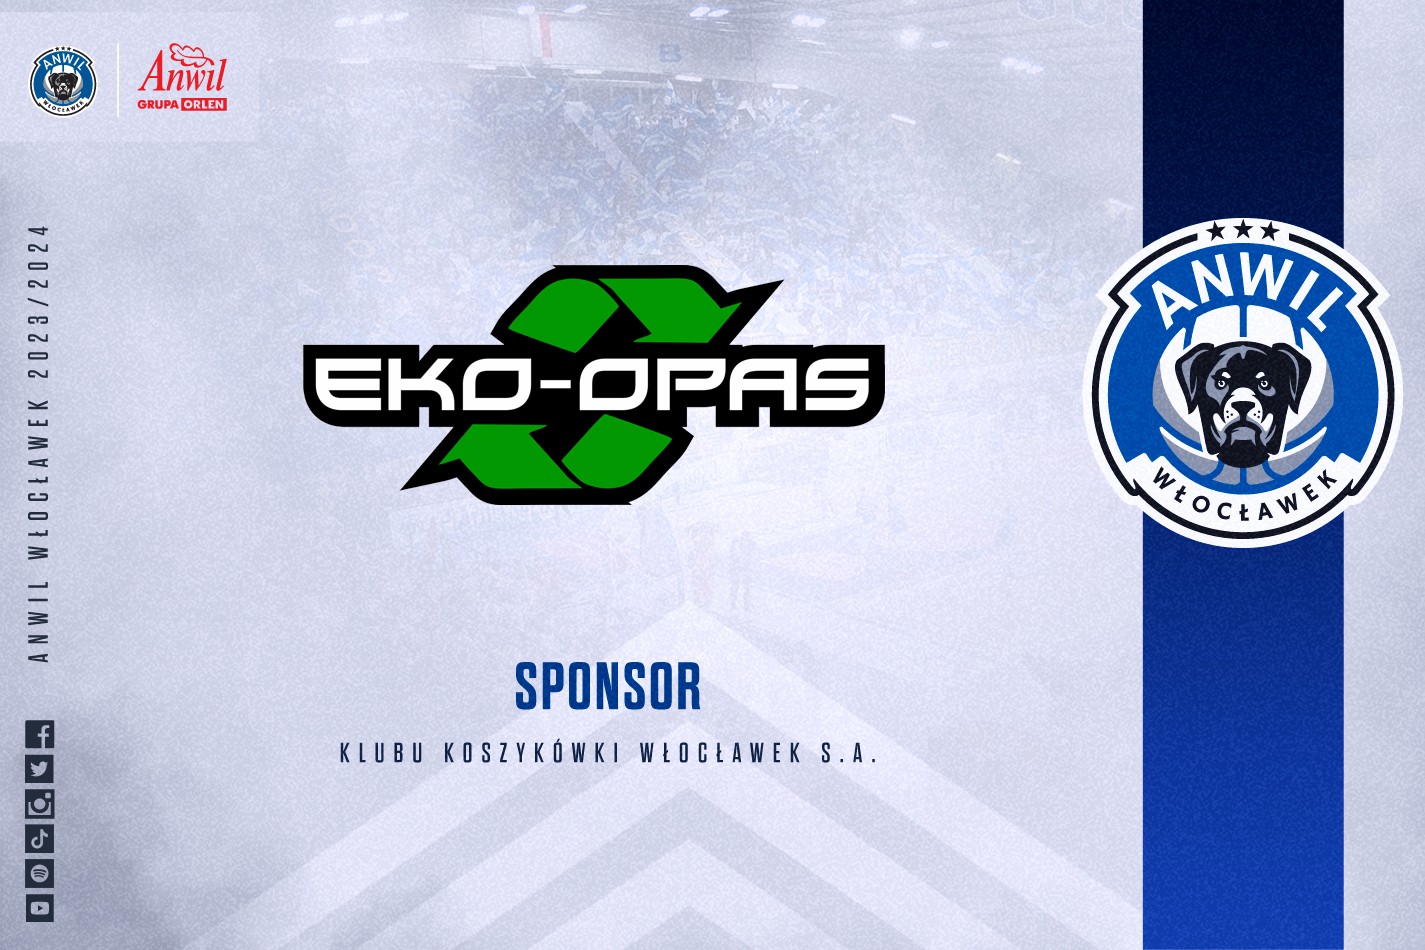 EKO-OPAS dołącza do sponsorów!